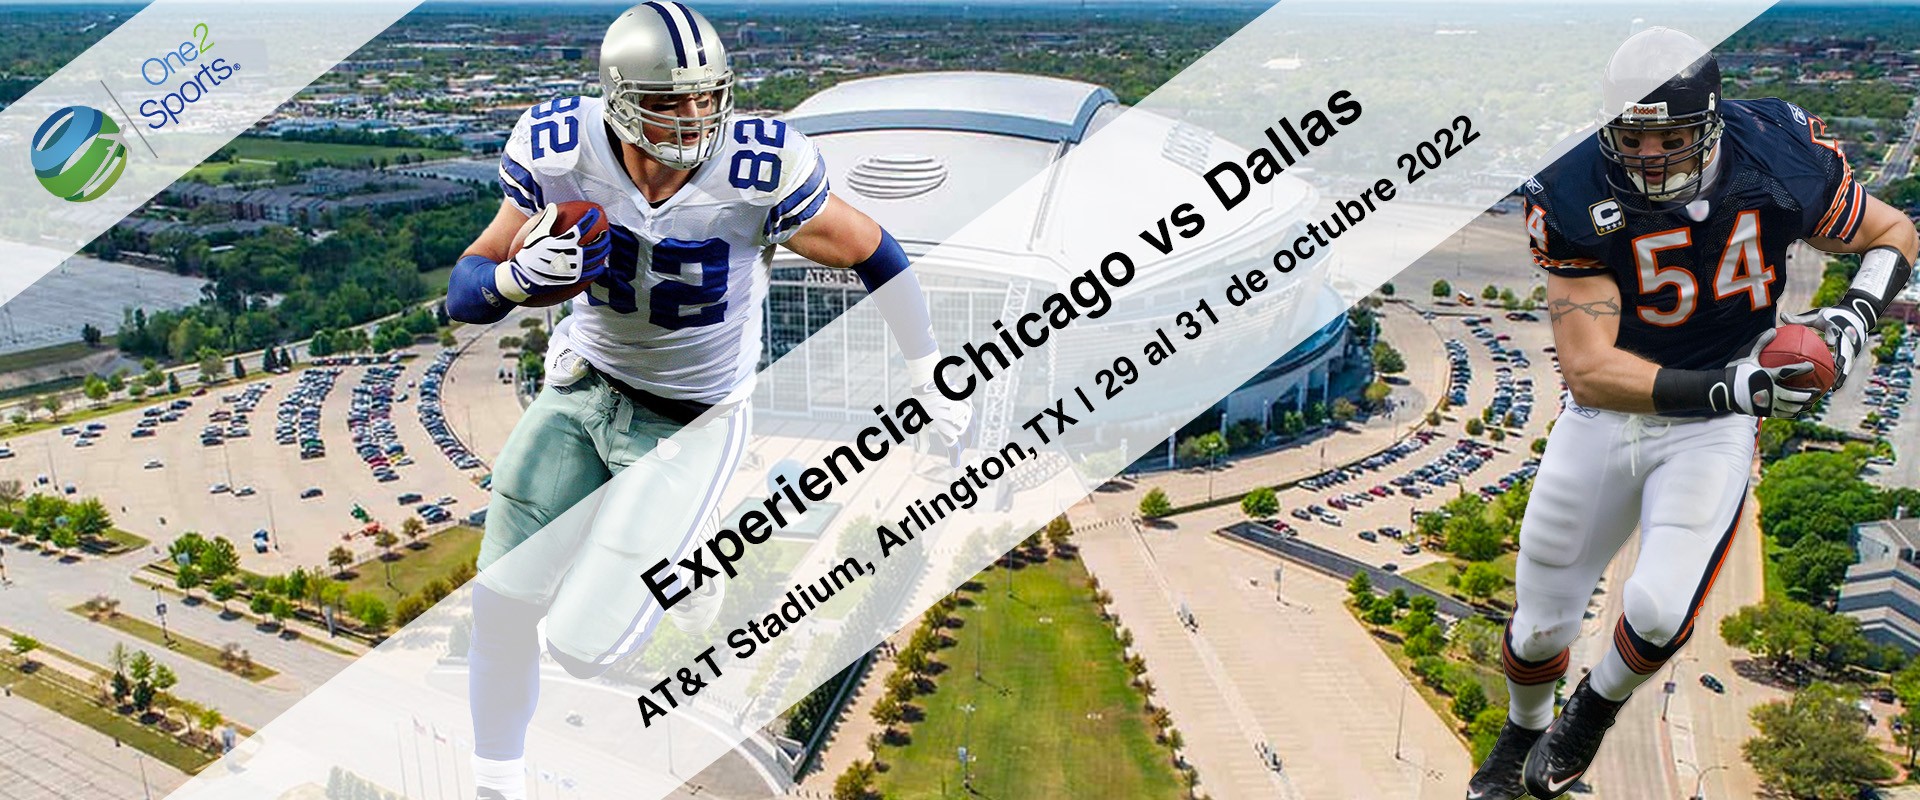 Dallas vs Chicago 